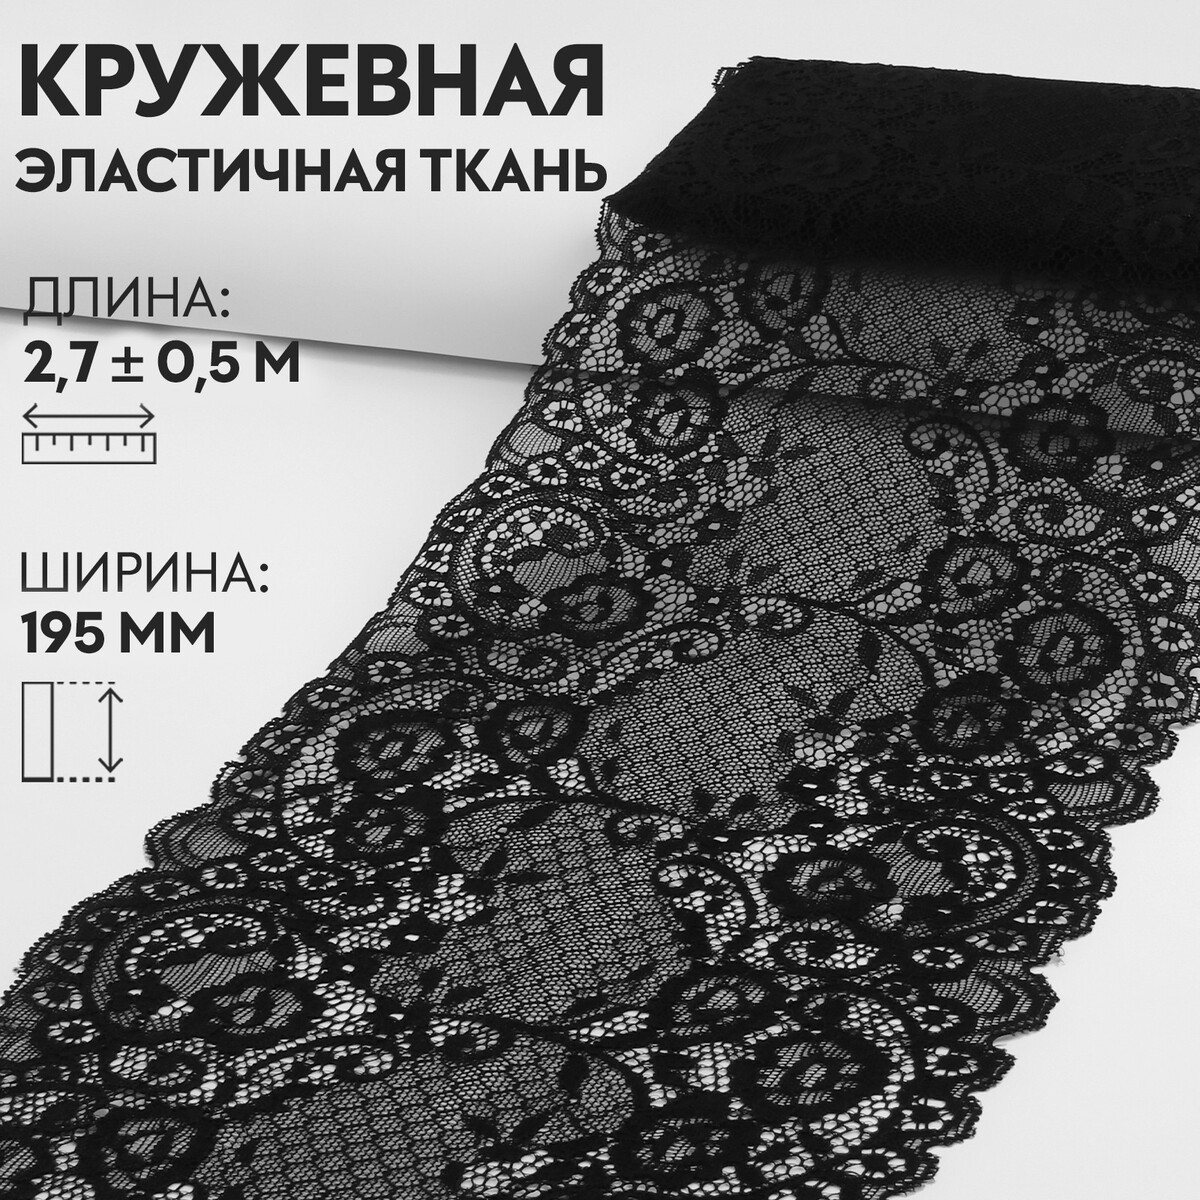 Кружевная эластичная ткань, 195 мм × 2,7 ± 0,5 м, цвет черный